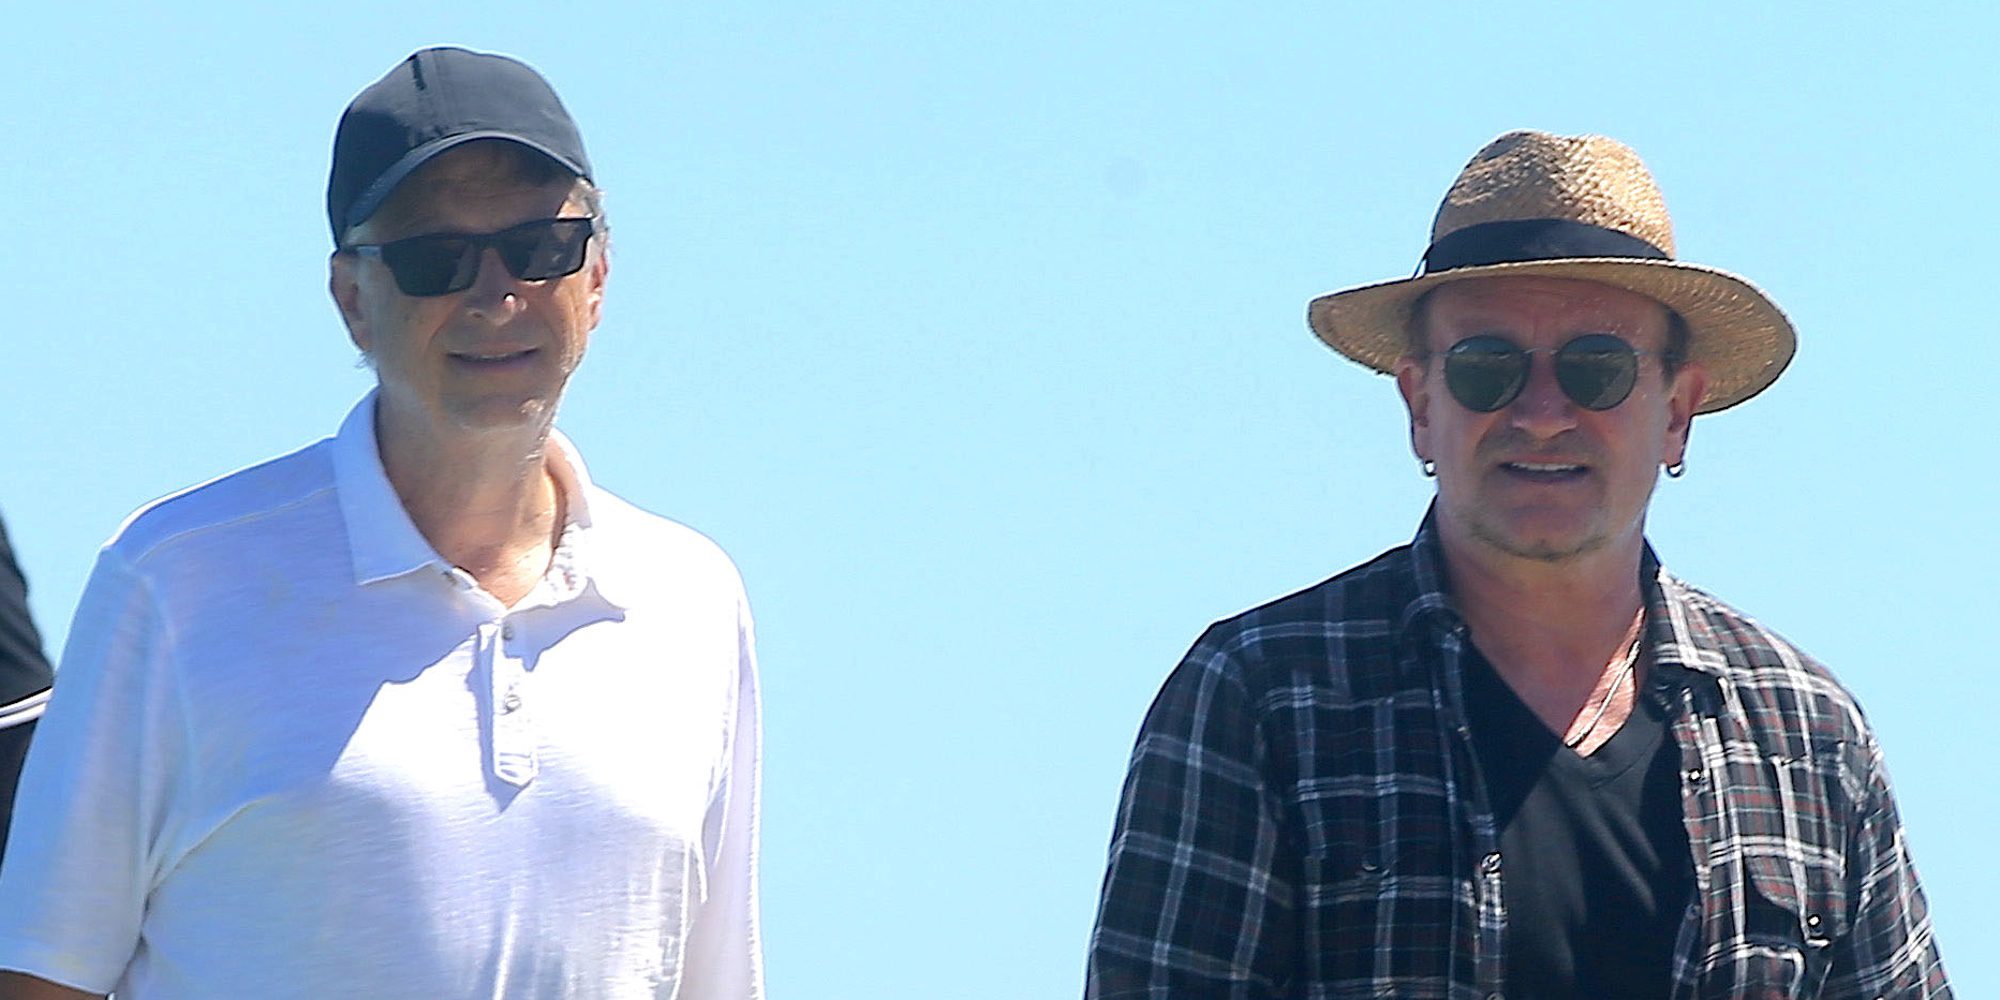 Las vacaciones en Saint Tropez de Bill Gates y Bono: la relación de amistad más rara del verano